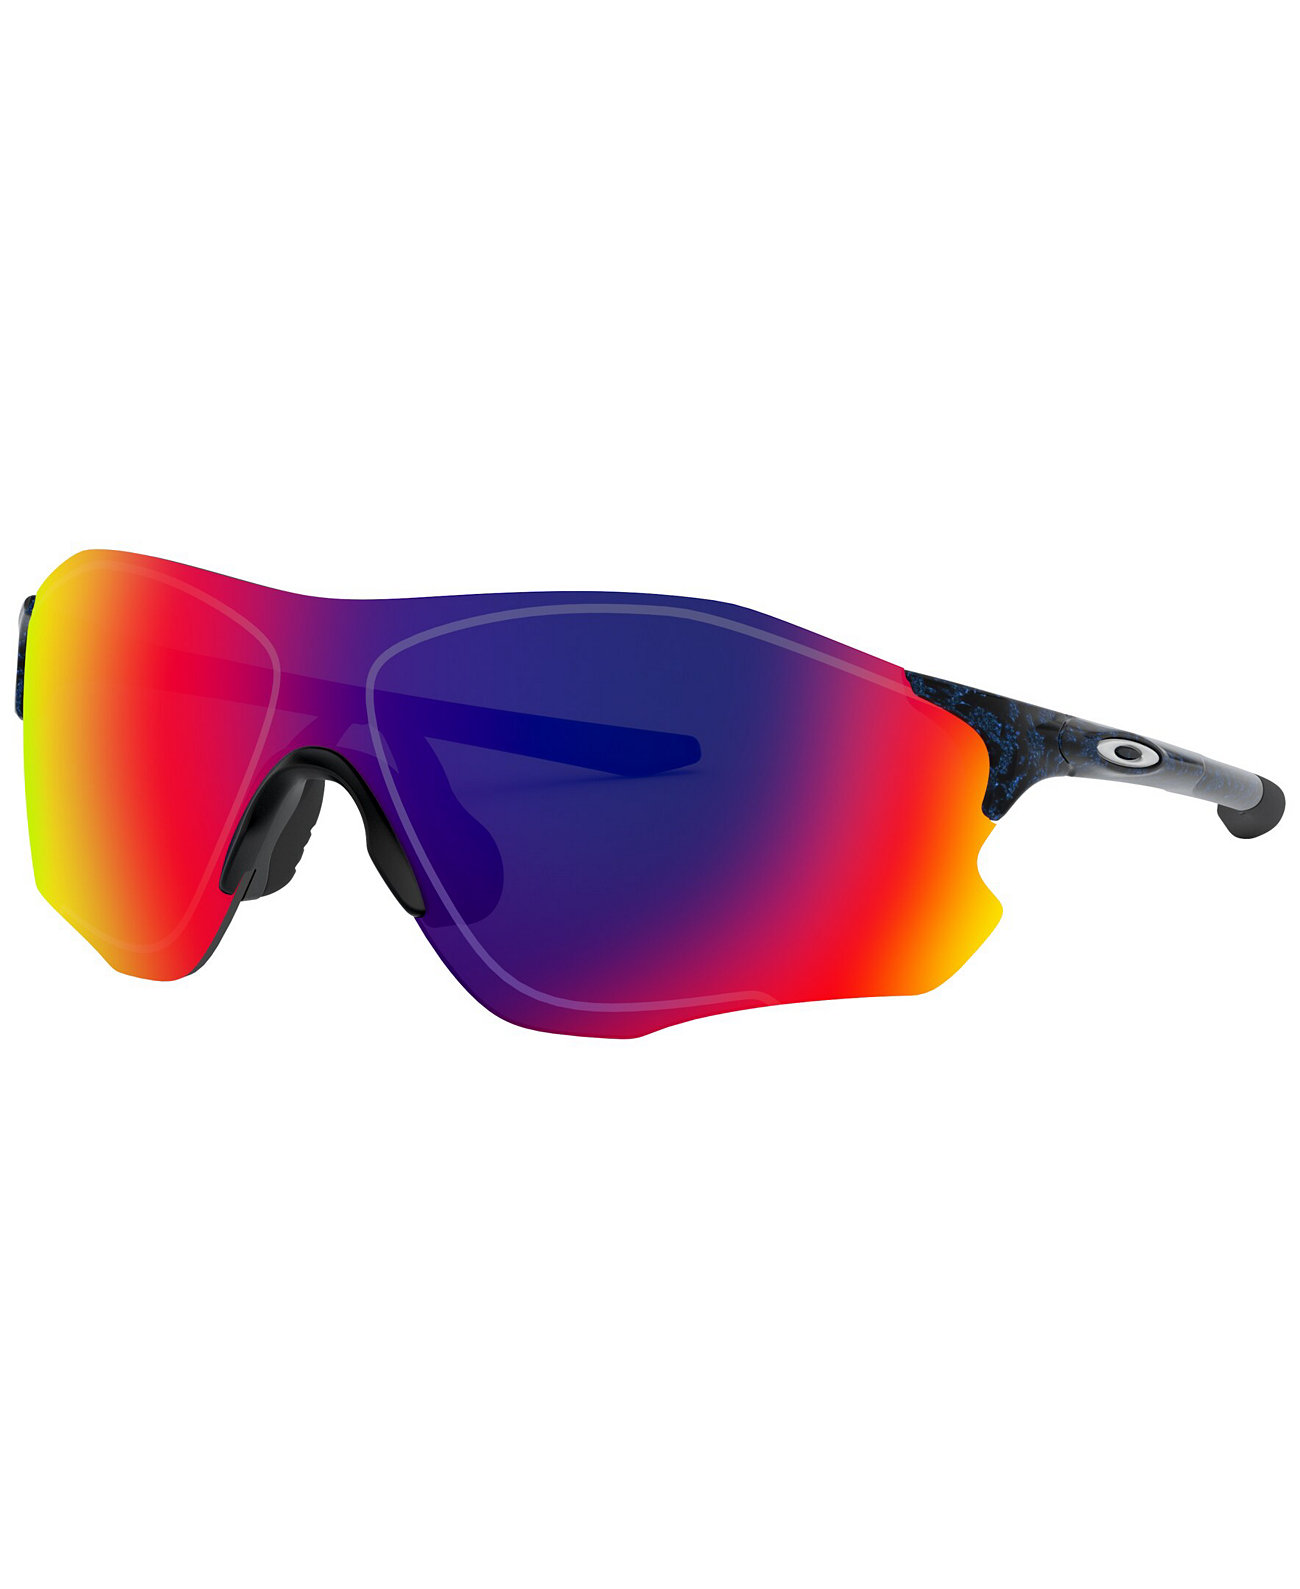 Мужские солнцезащитные очки с низкой перемычкой, OO9313 Evzero Path 38 Oakley